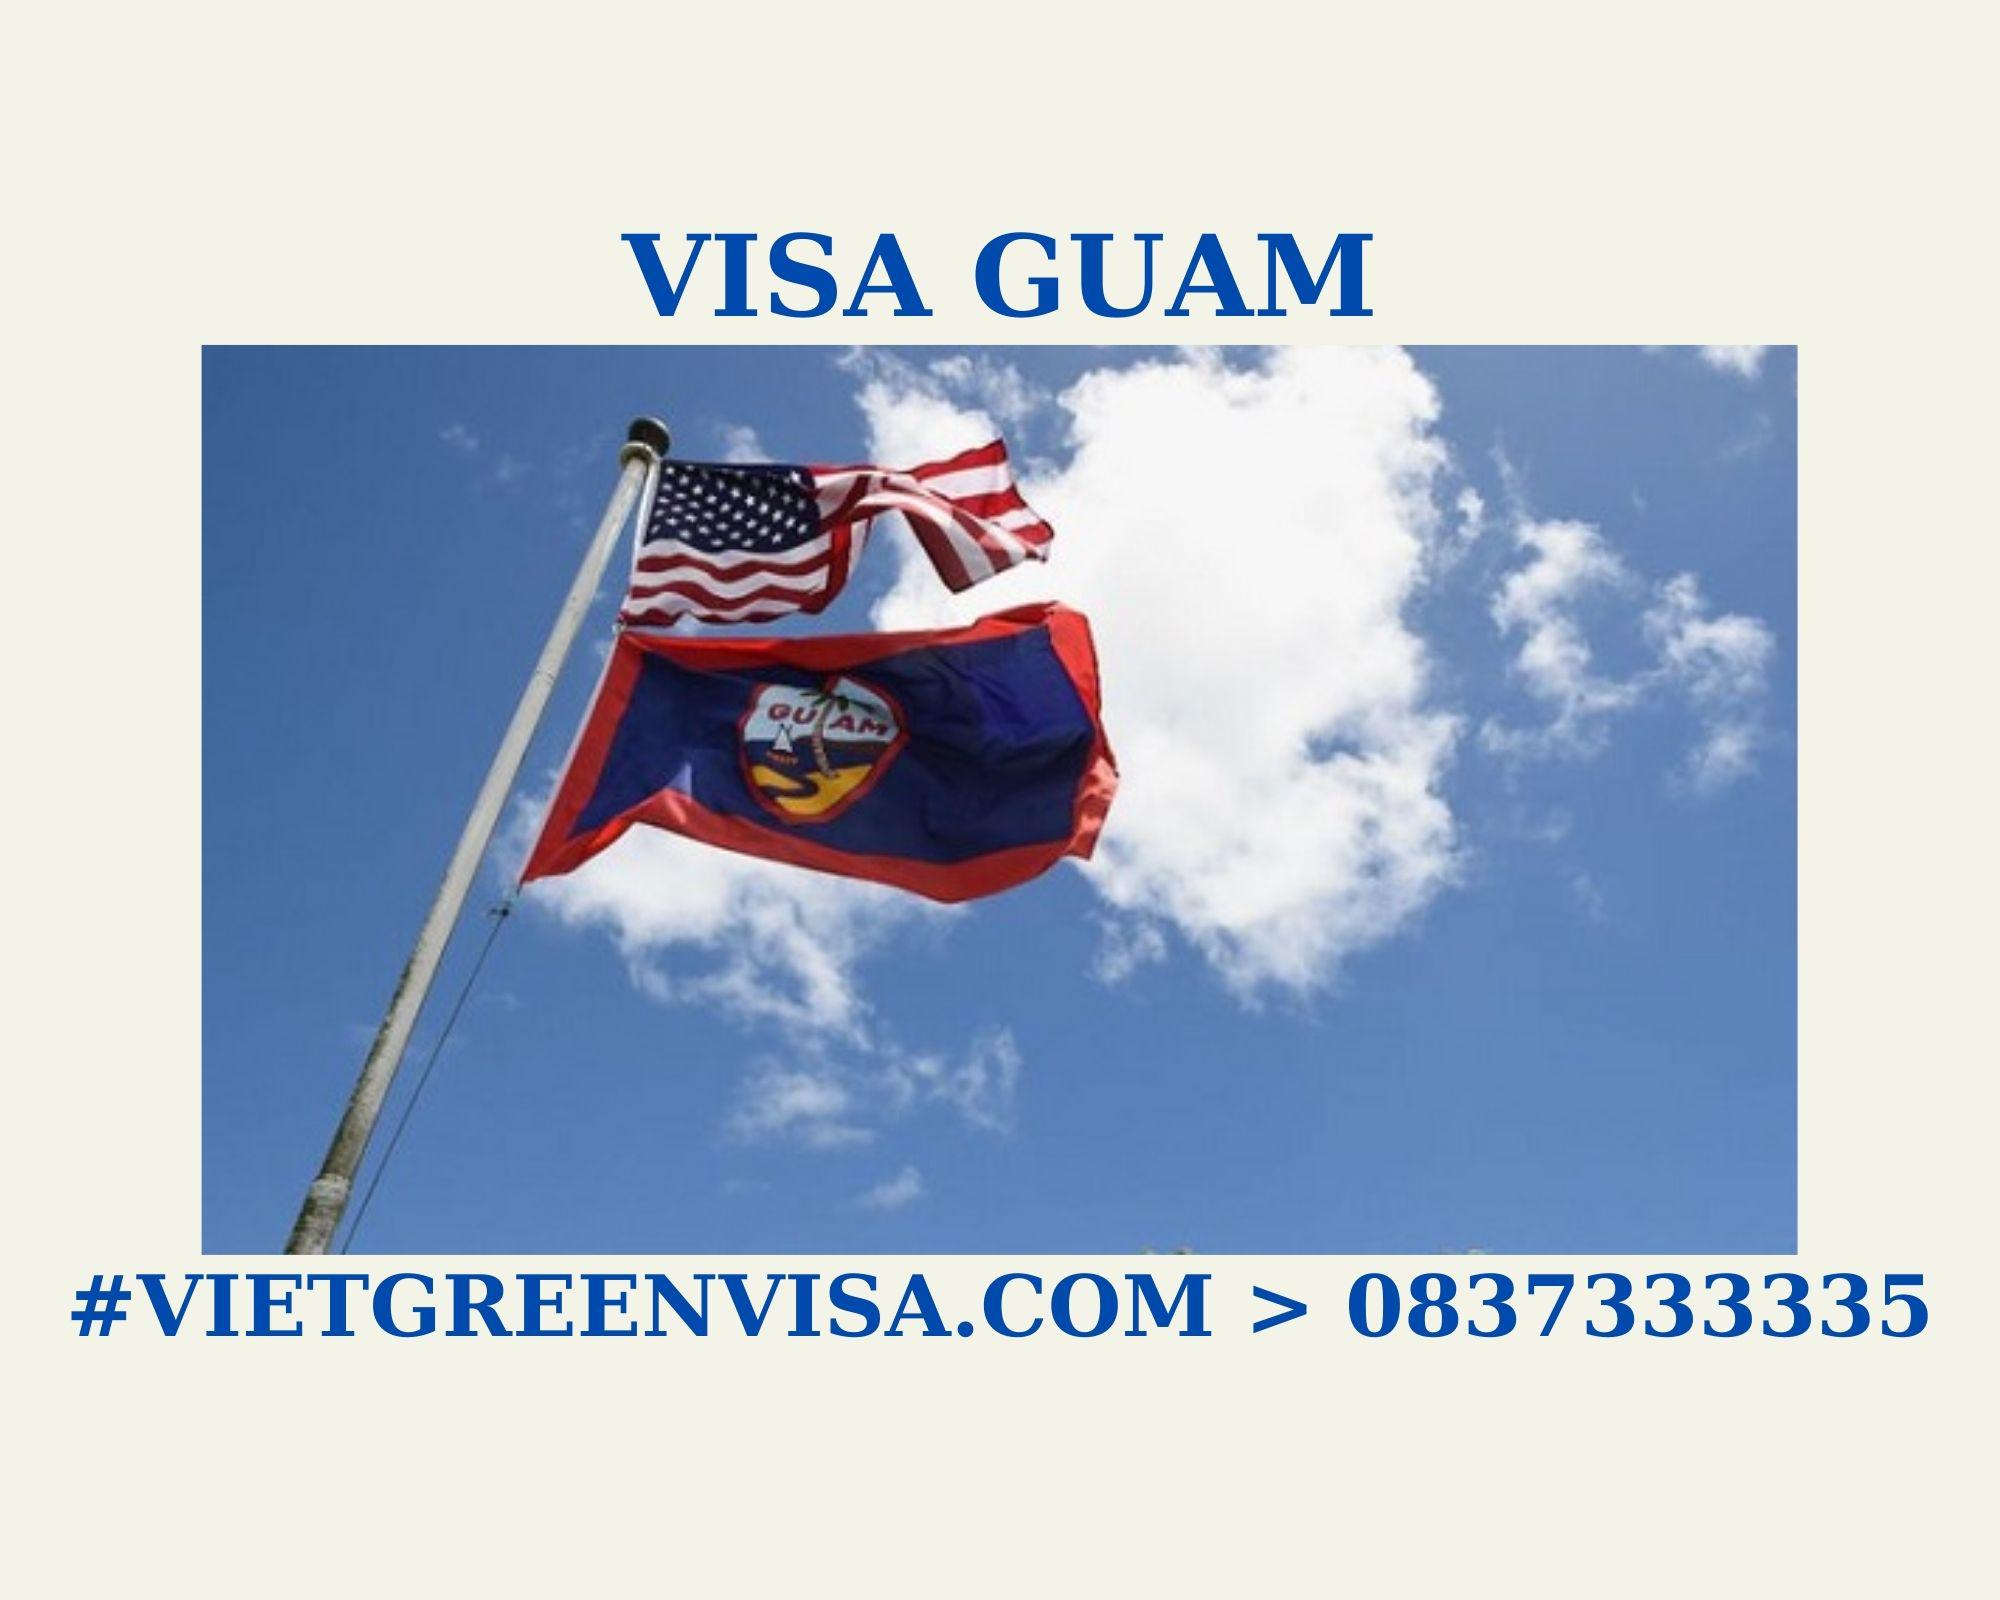 Dịch vụ visa thăm thân Guam giá rẻ, Làm visa thăm thân Guam trọn gói, Xin visa đi Guam thăm thân , visa Guam